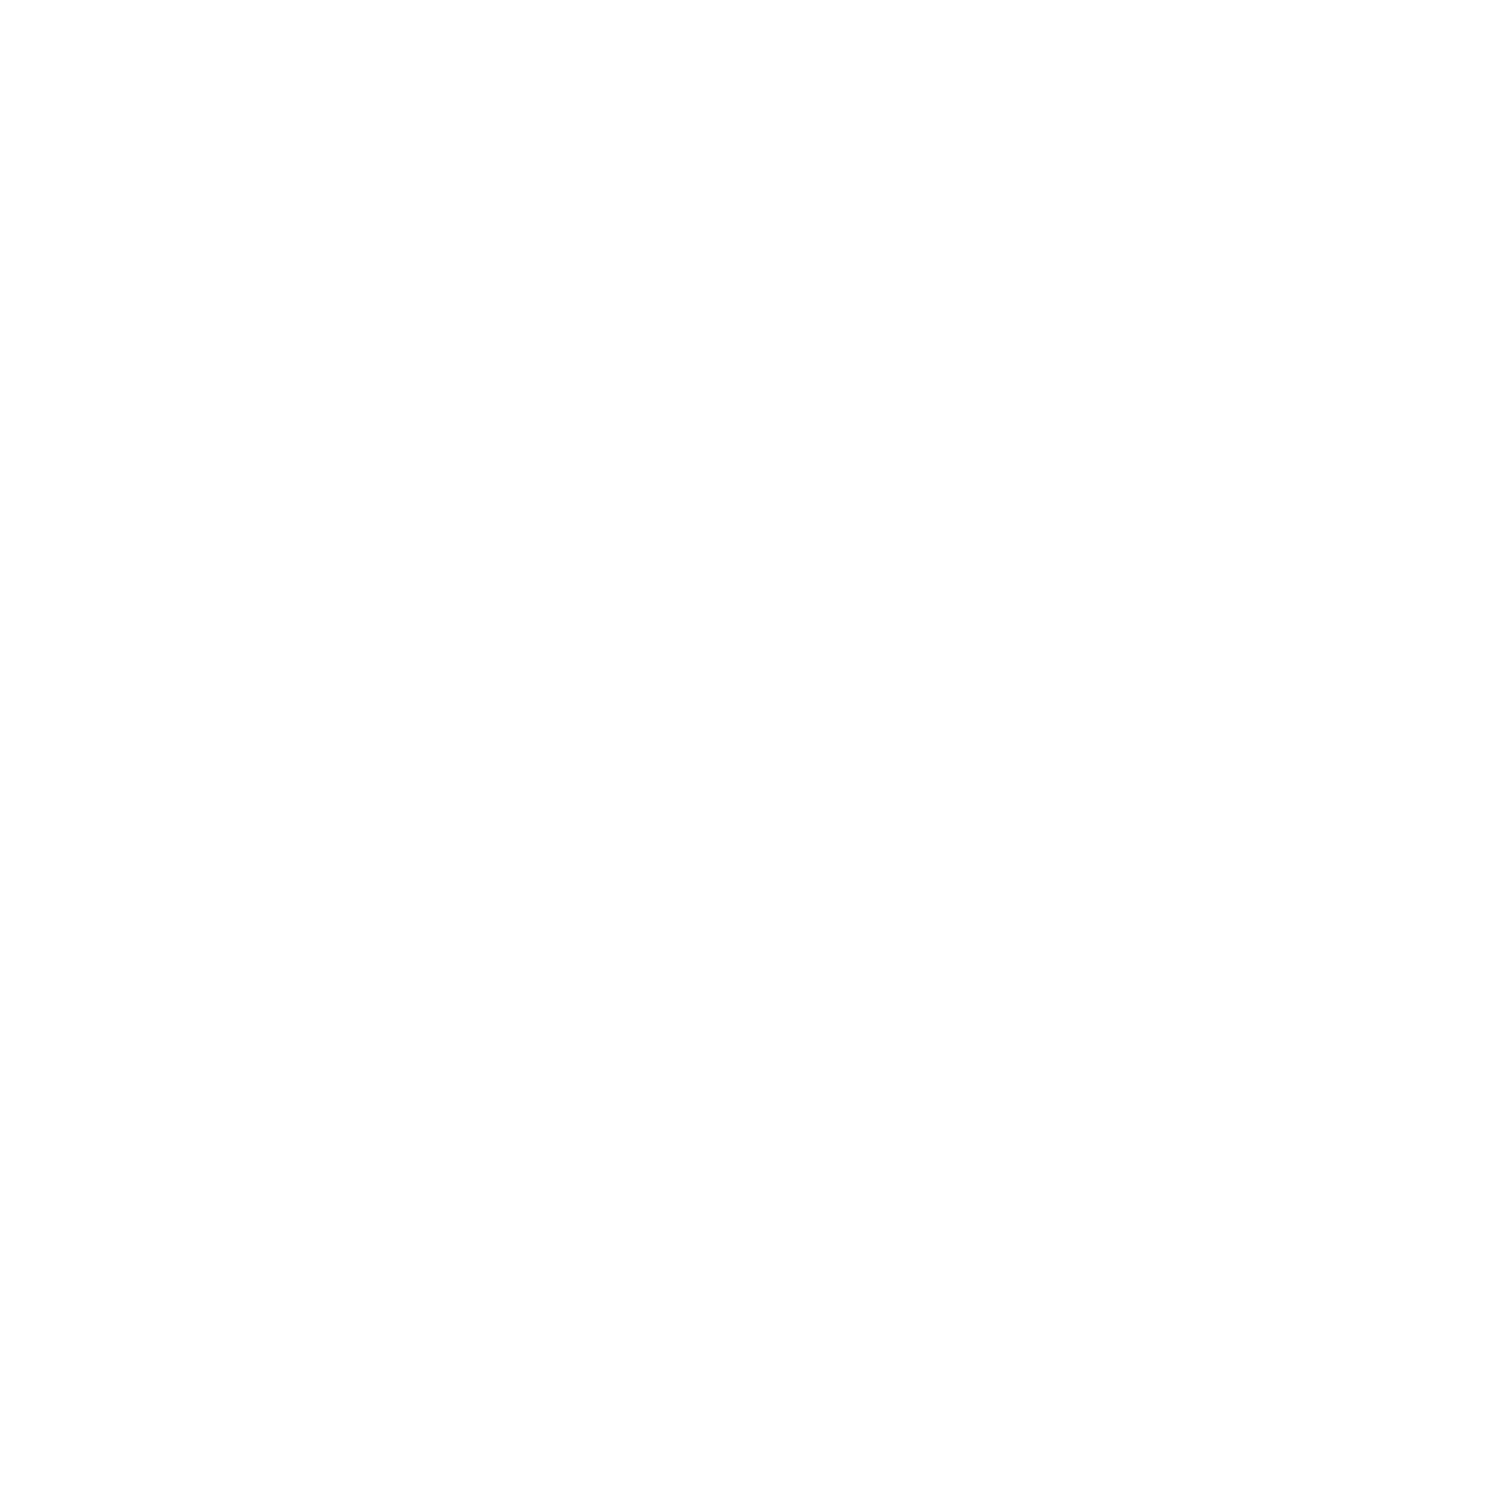 Parke Bancorp logo for dark backgrounds (transparent PNG)